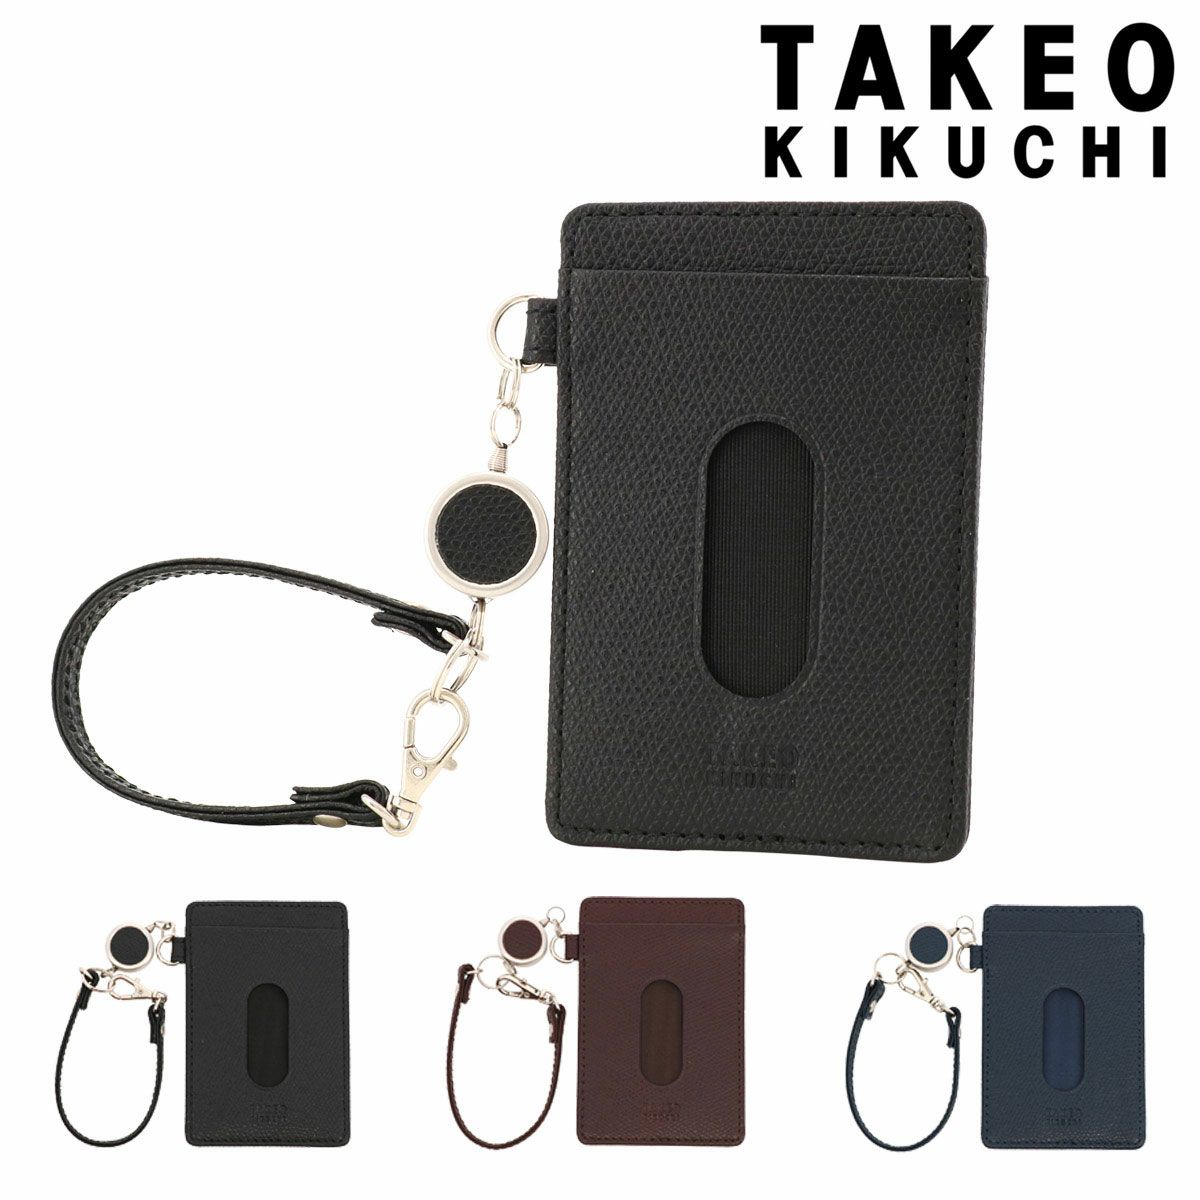 タケオキクチ コインケース エイト メンズ 746611TAKEO KIKUCHI 財布